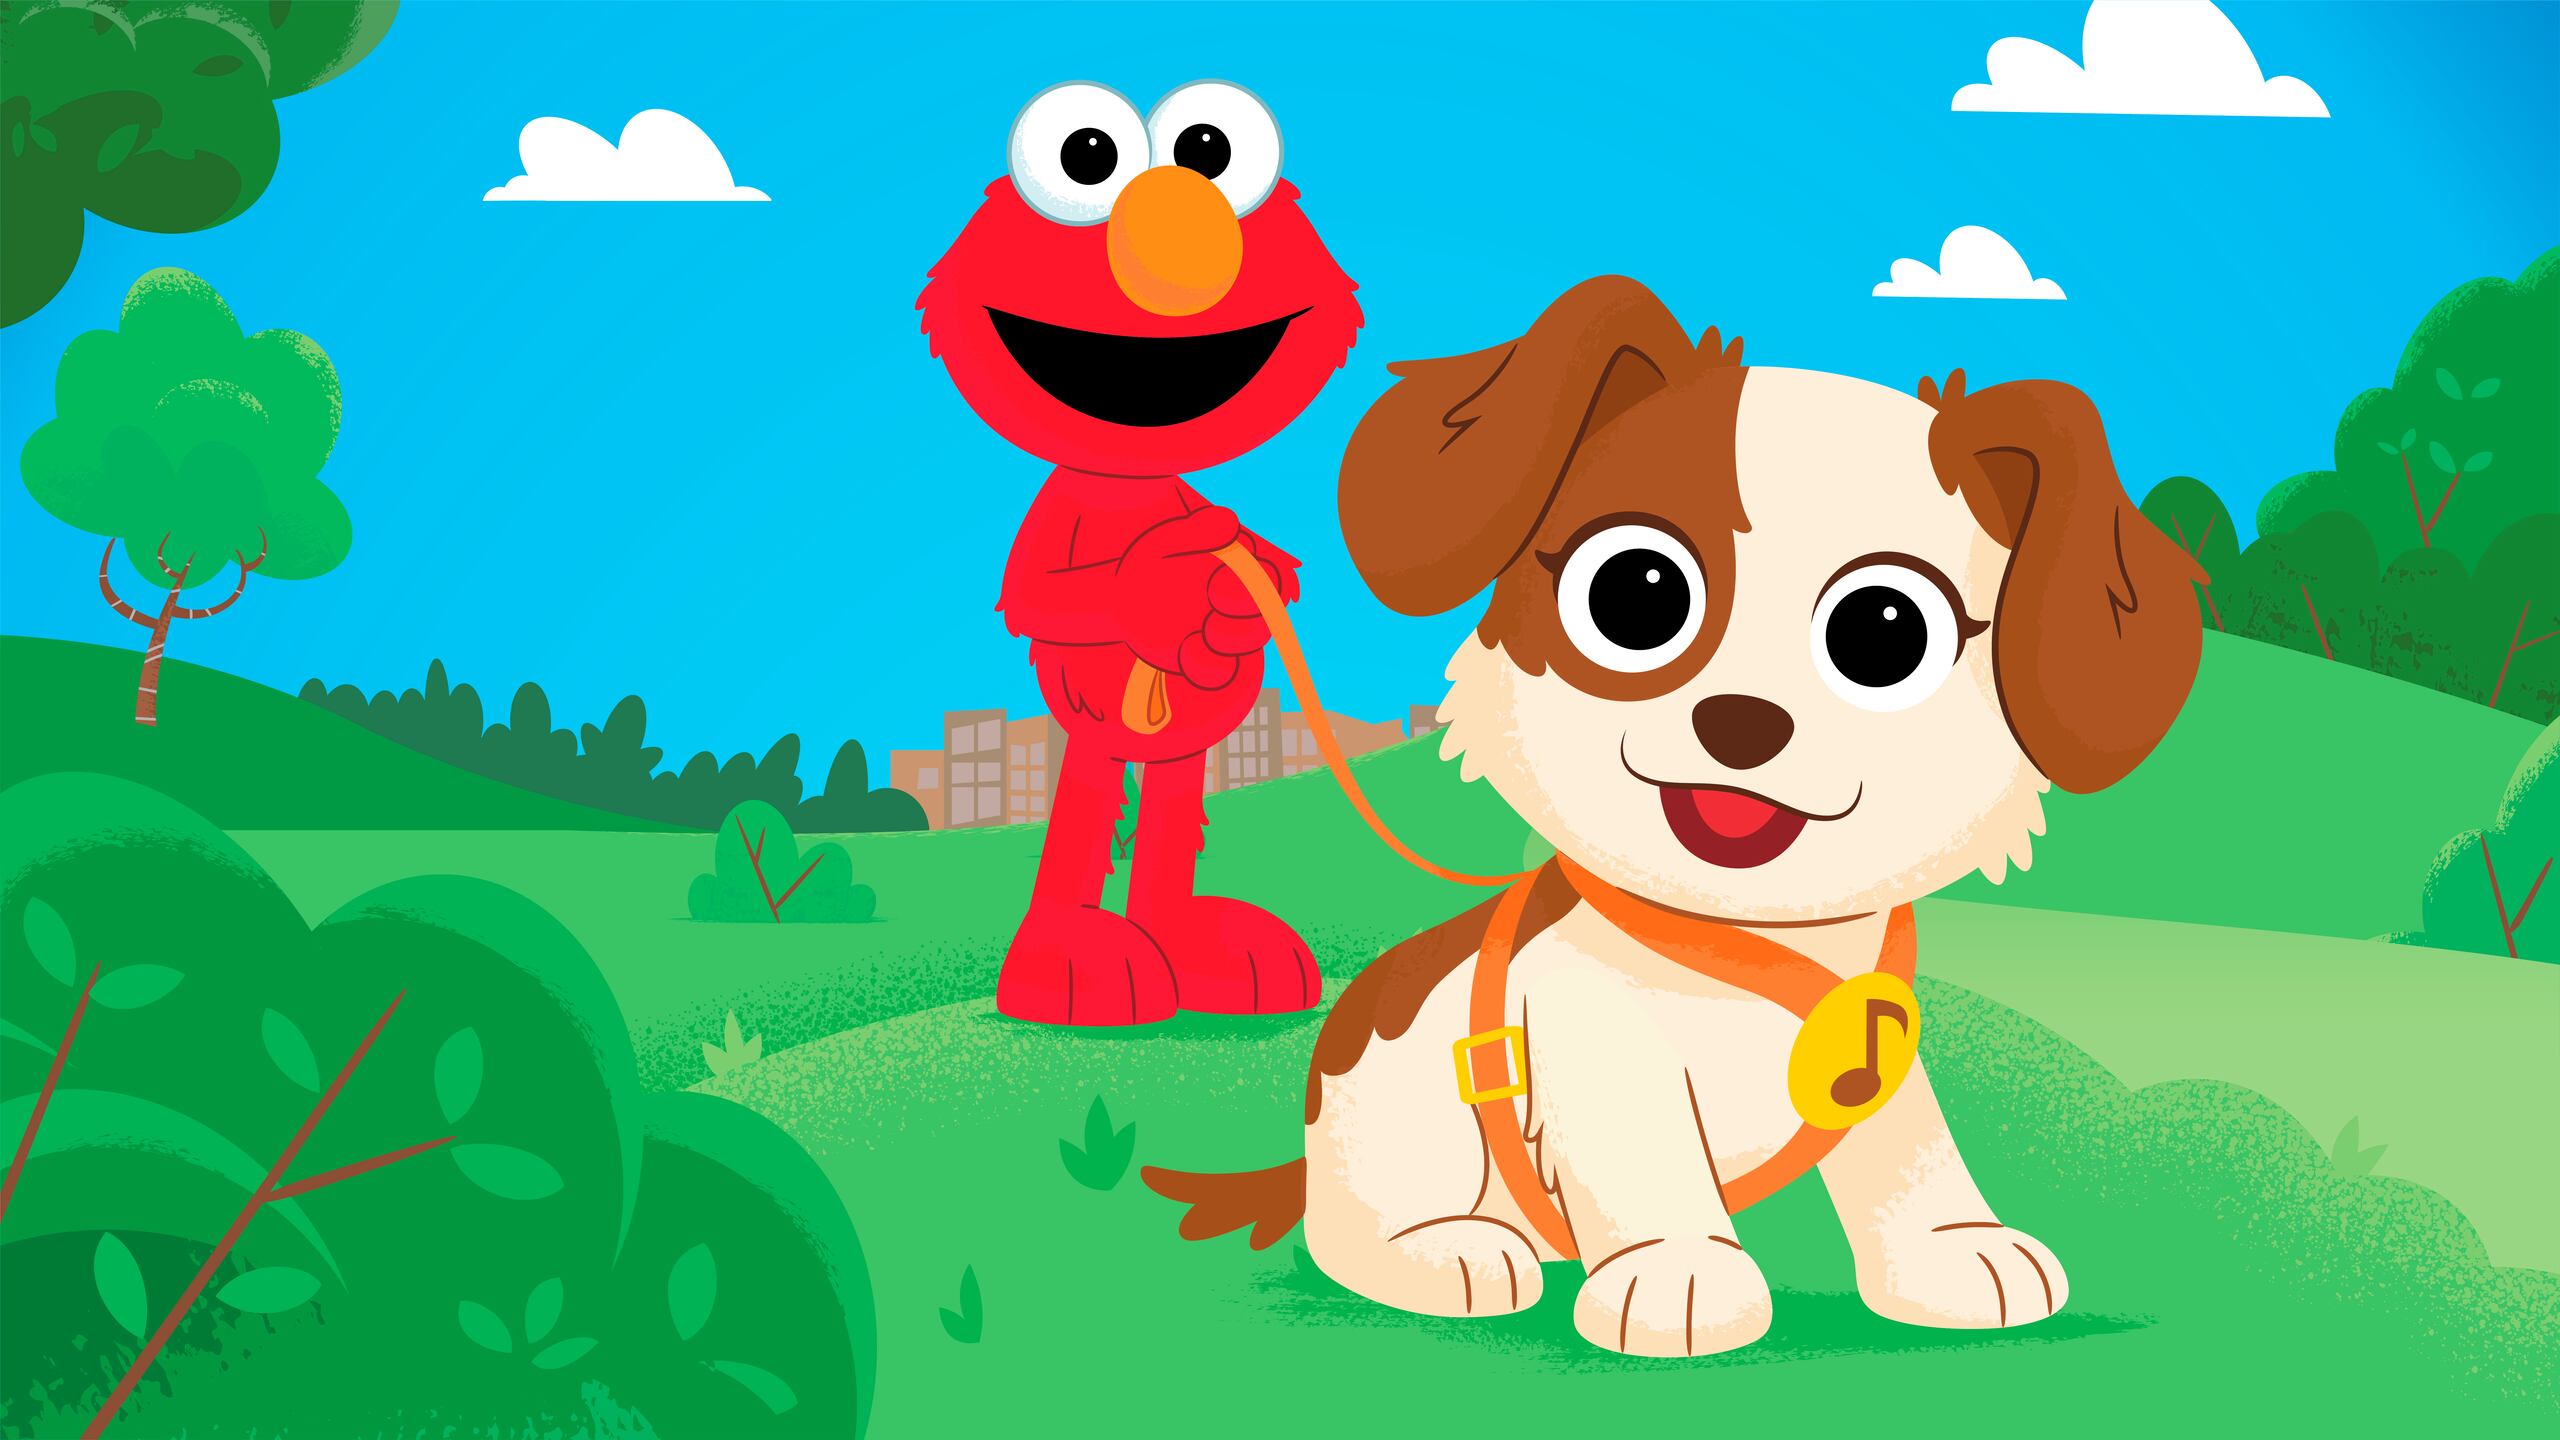 Tango debutará en el especial "Furry Friends Forever: Elmo Gets a Puppy", que se estrenará el HBO Max el 5 de agosto.